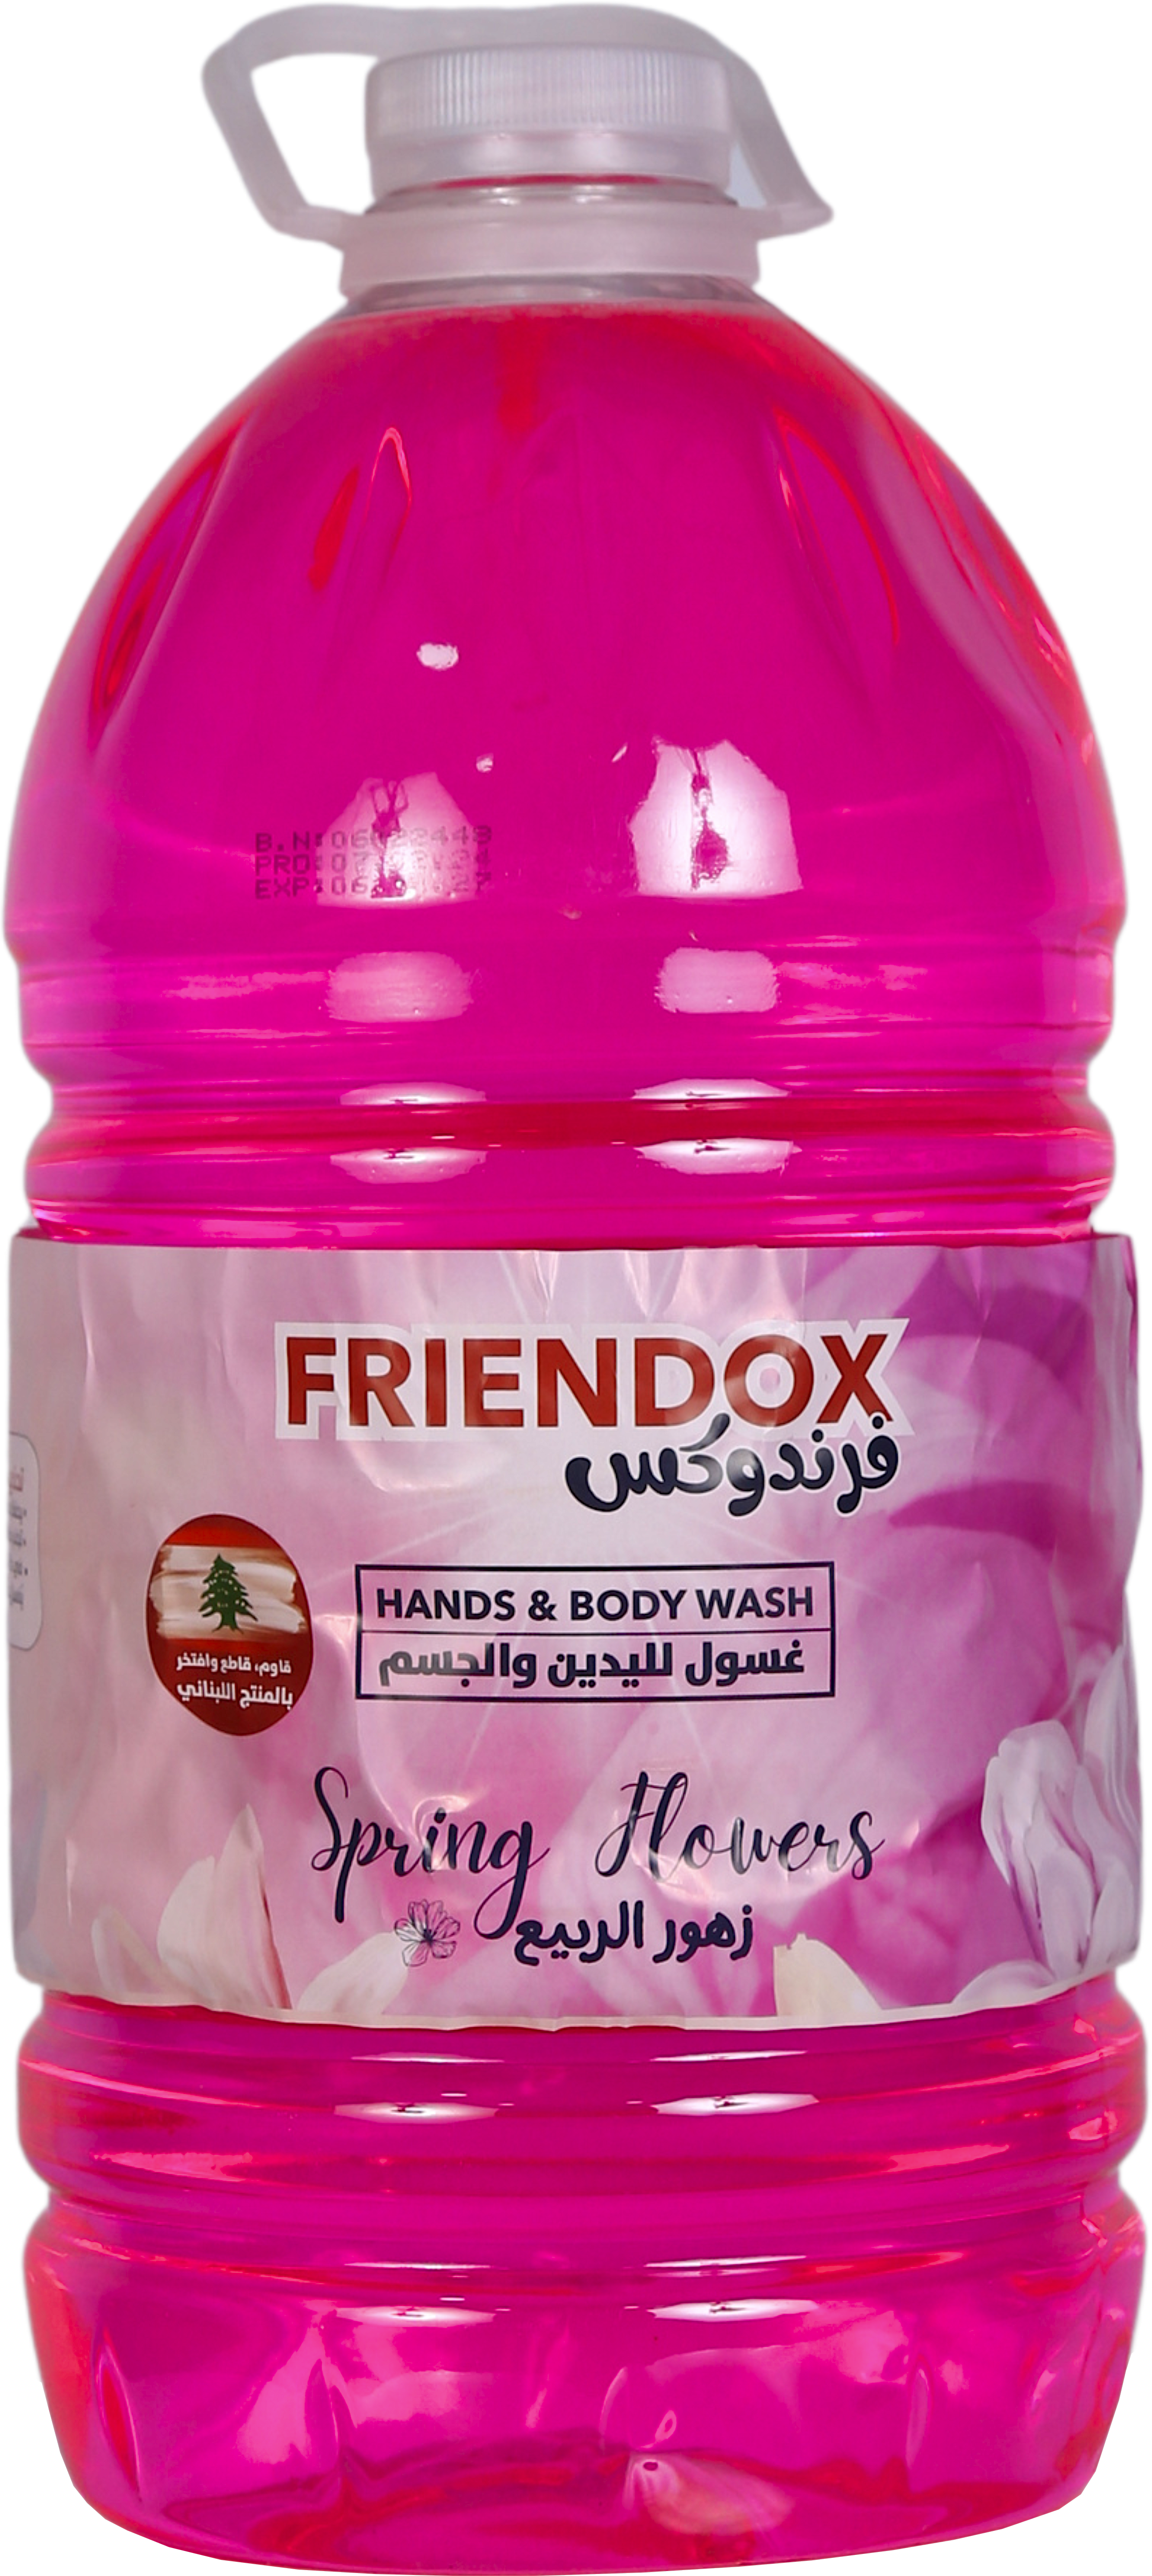 Friendox Hand & Body Wash Spring Flowers 4.75 L